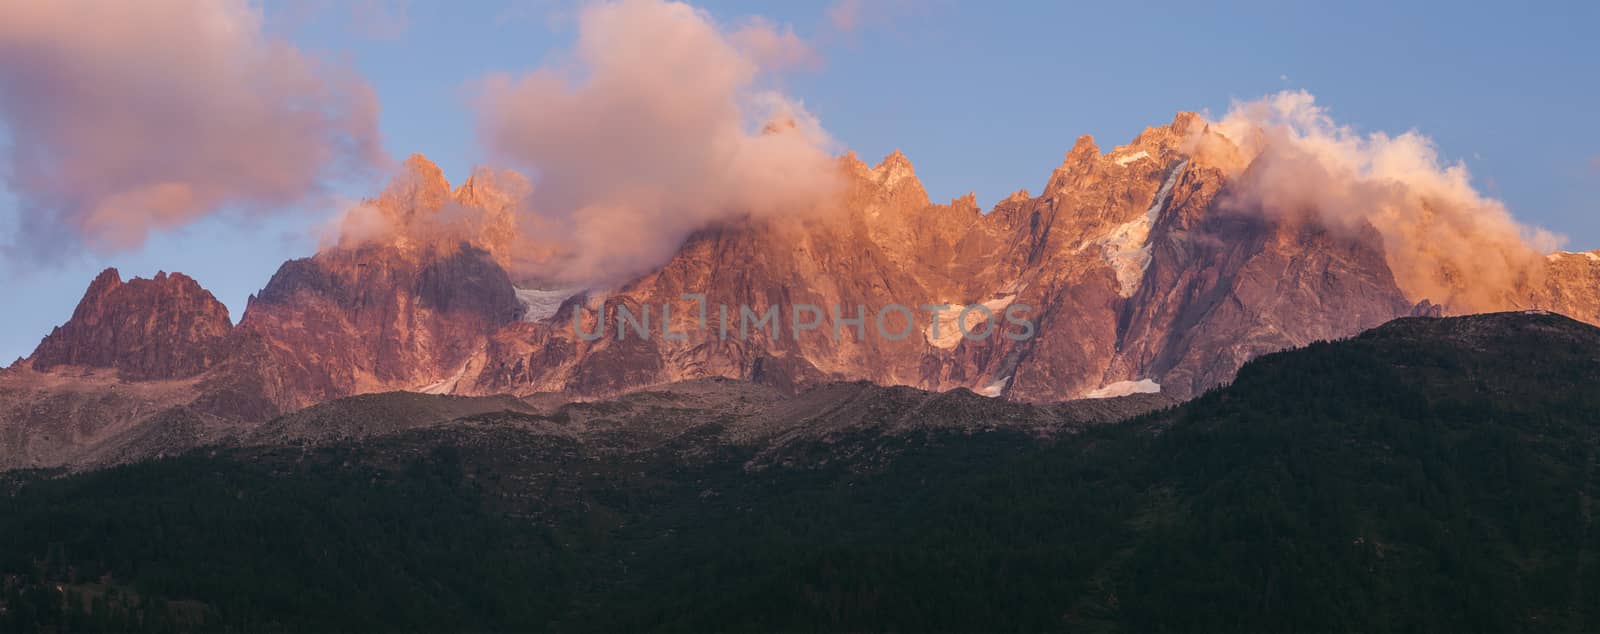 Alps peaks in Chamonix area by benkrut